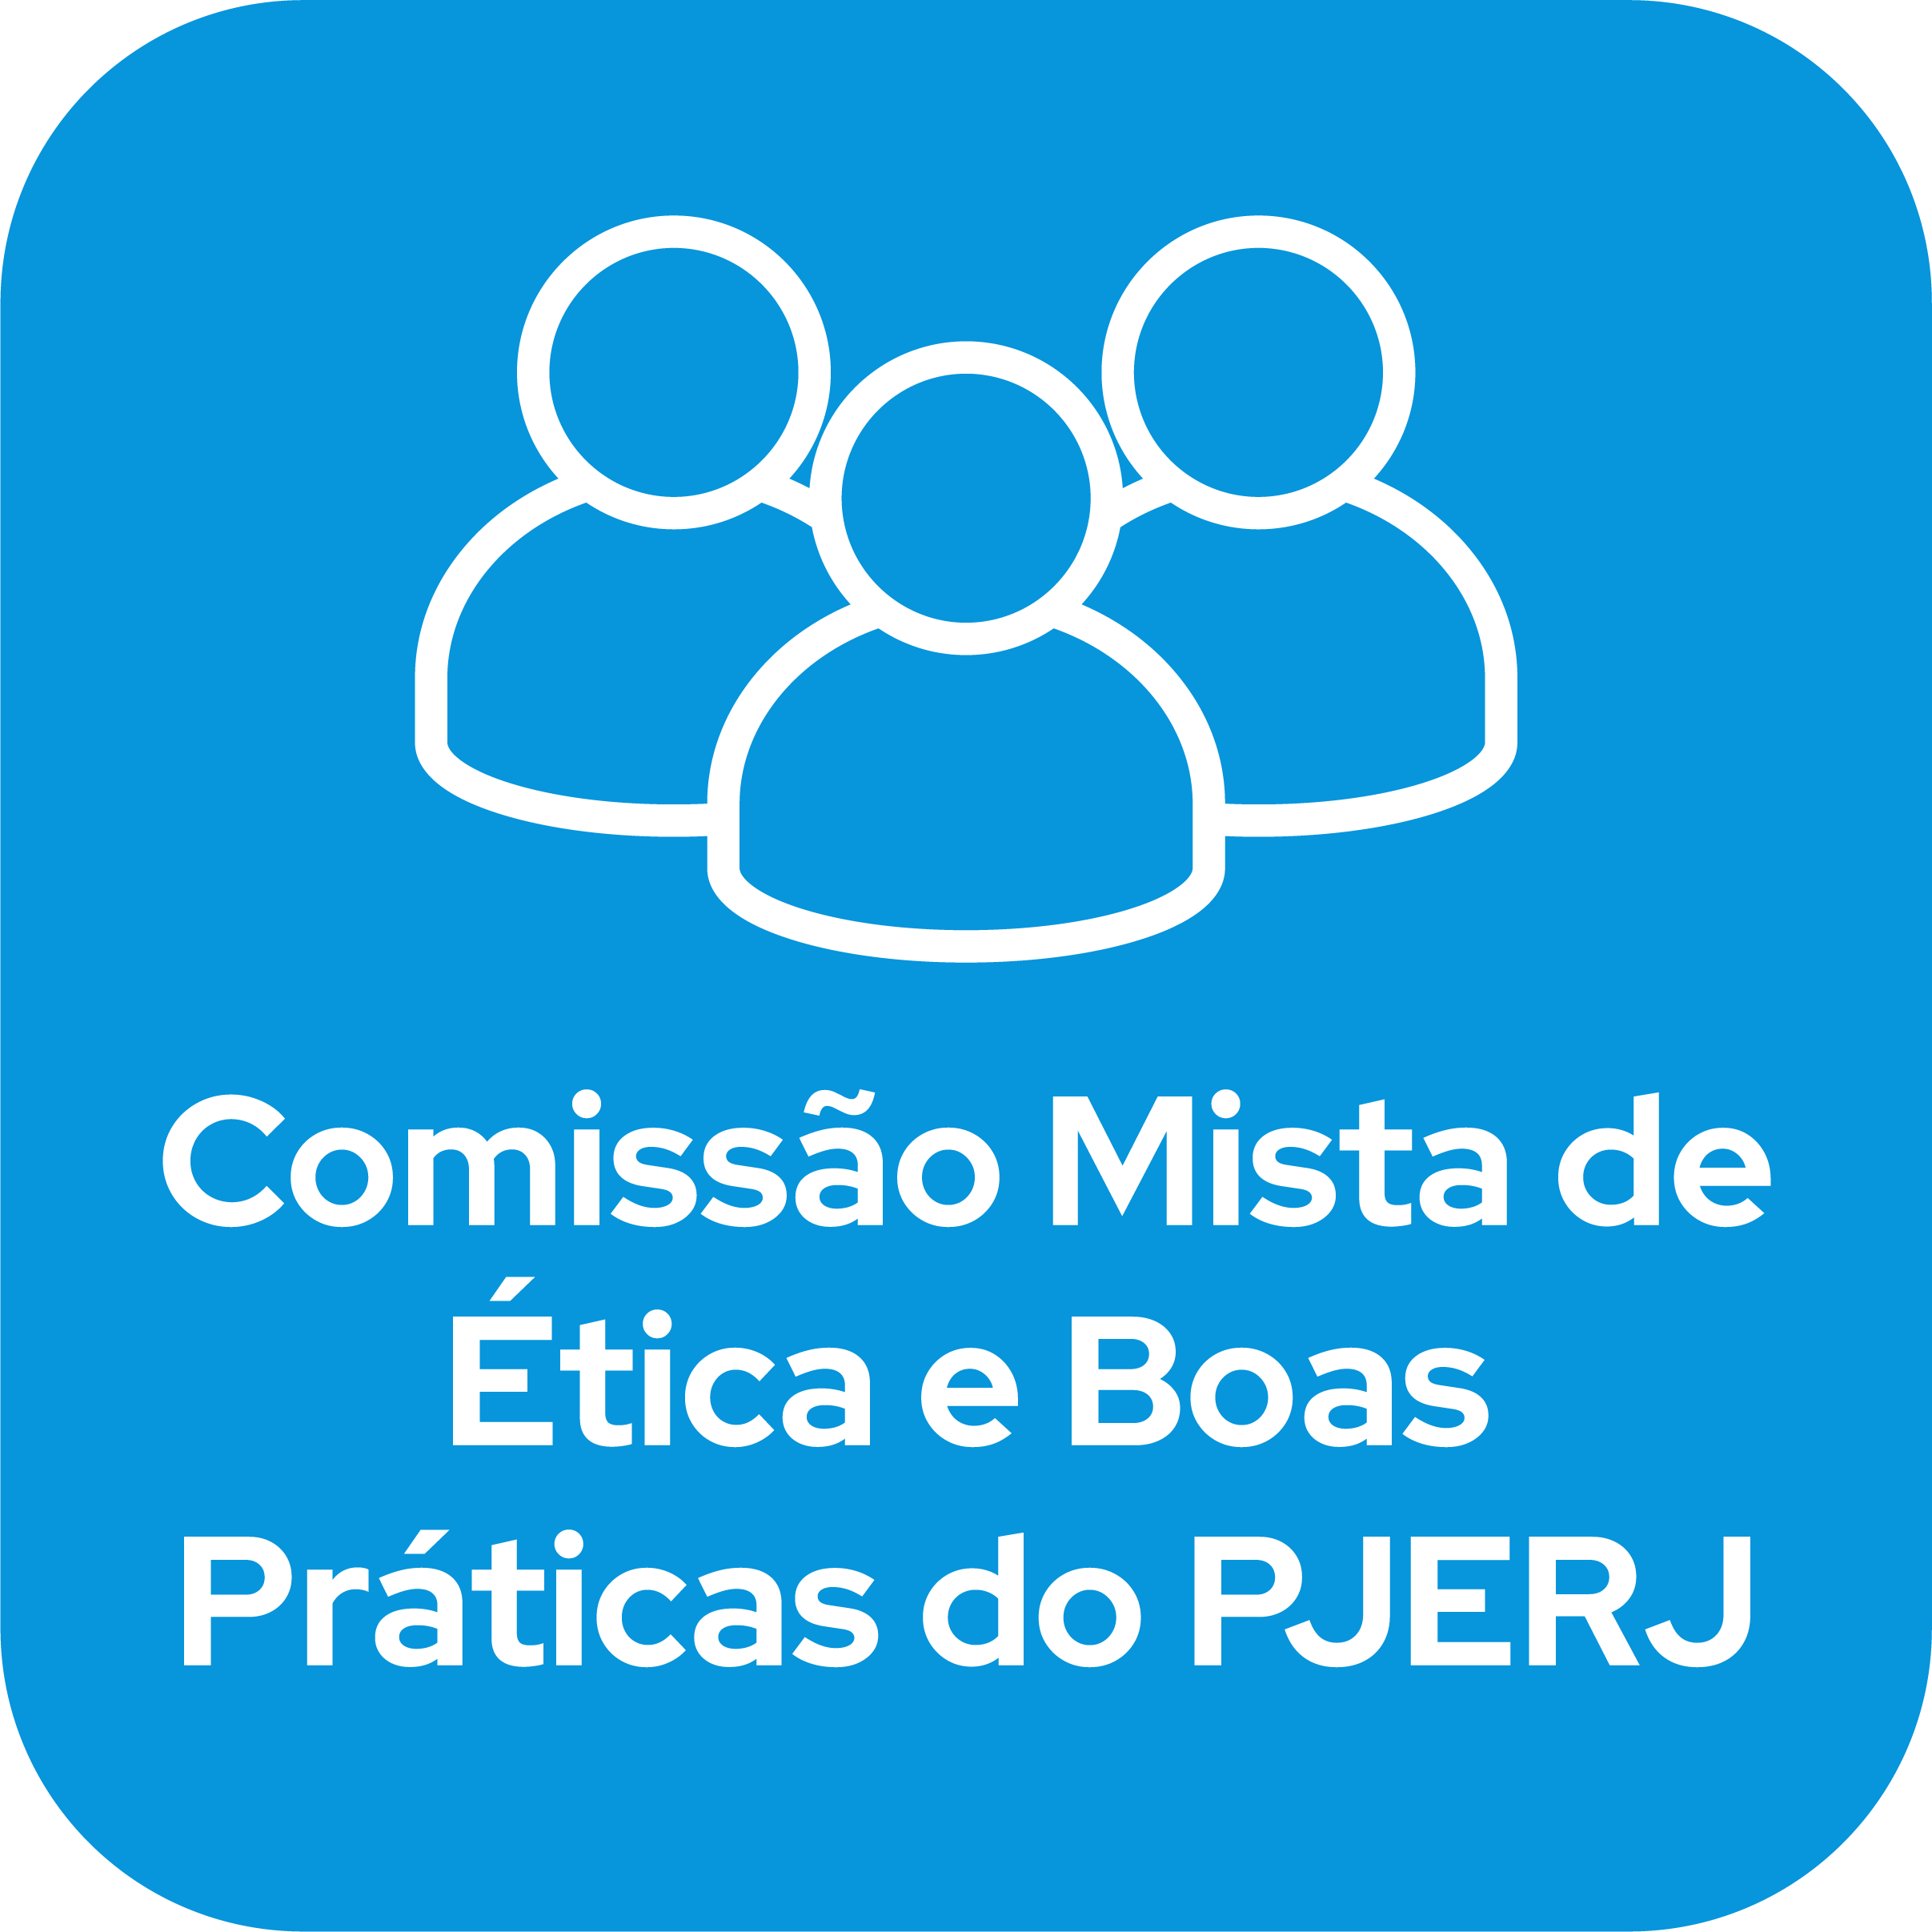 Clique e acesse sobre a comissão mista de ética e boas práticas do PJERJ